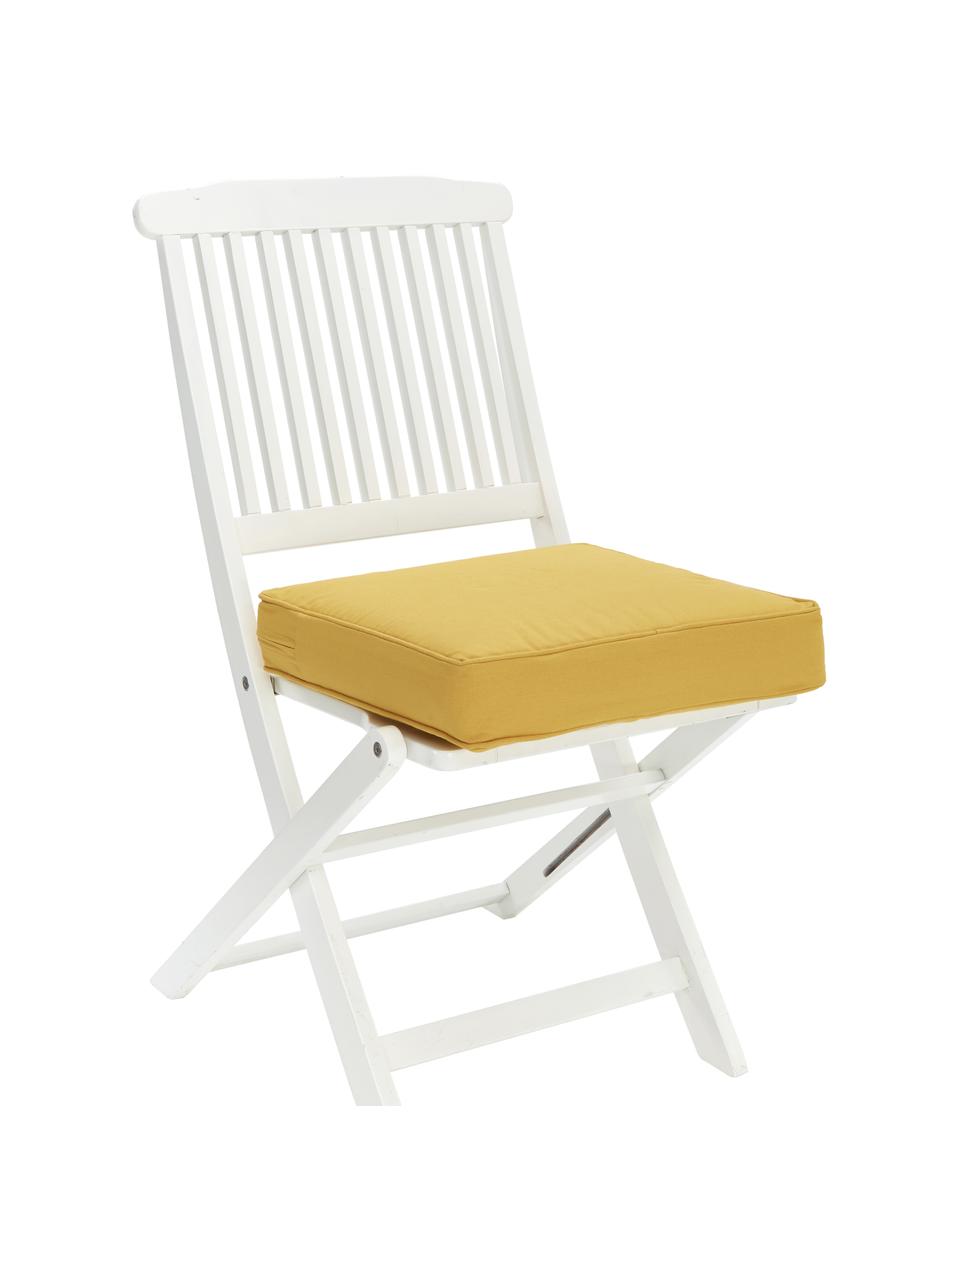 Hoog katoenen stoelkussen Zoey in geel, Geel, B 40 x L 40 cm